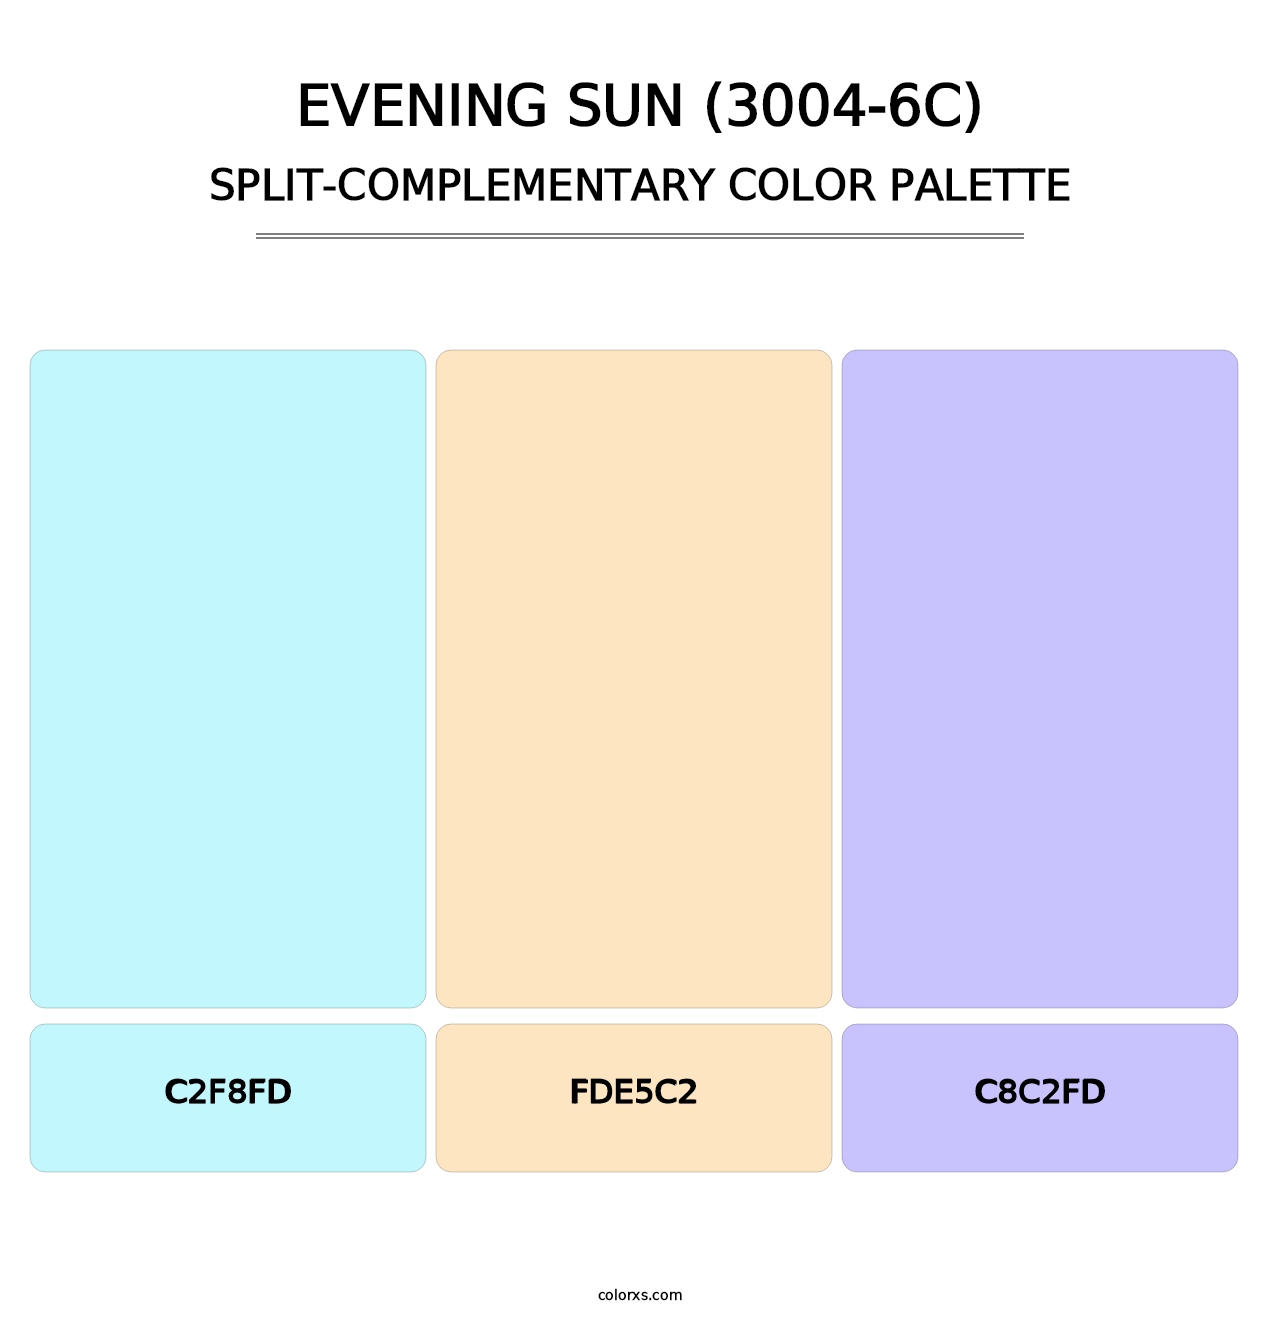 Evening Sun (3004-6C) - Split-Complementary Color Palette